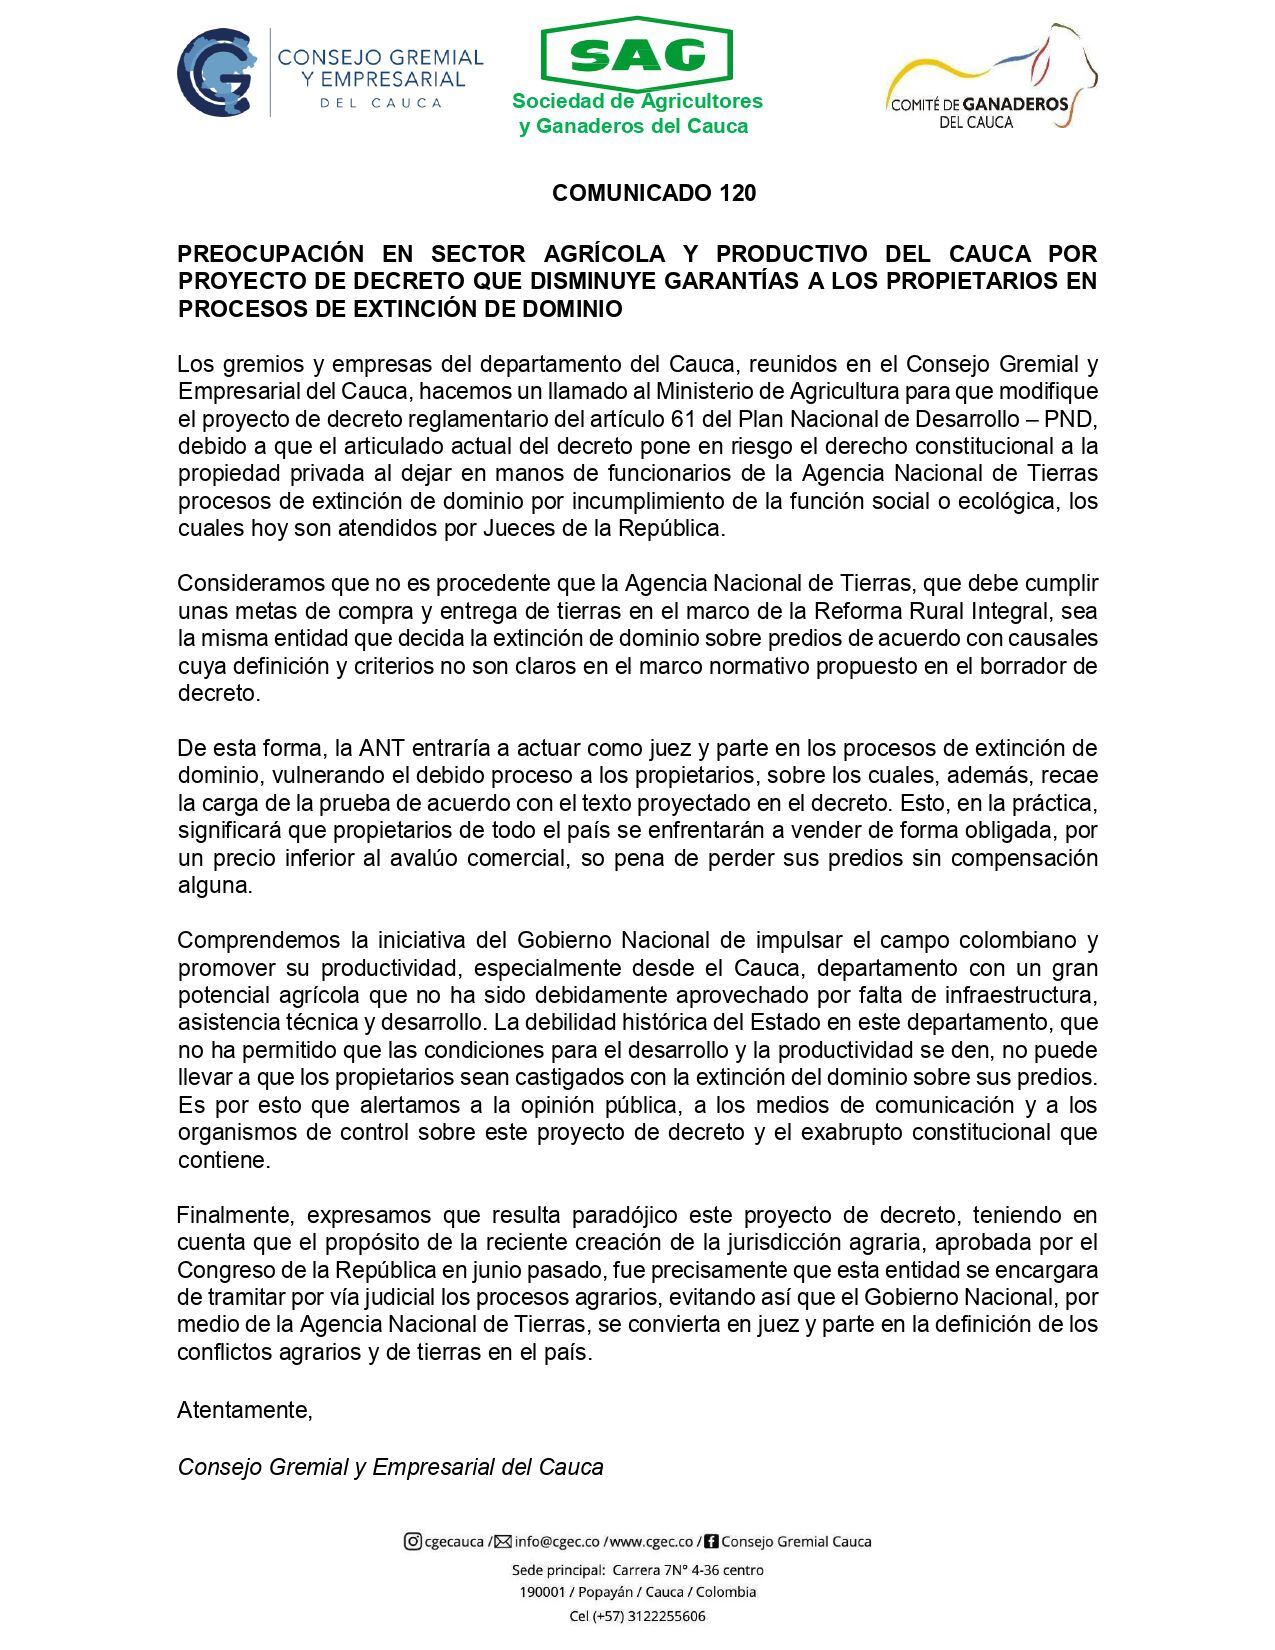 Comunicado del Consejo Gremial y Empresarial del Cauca sobre el borrador de proyecto